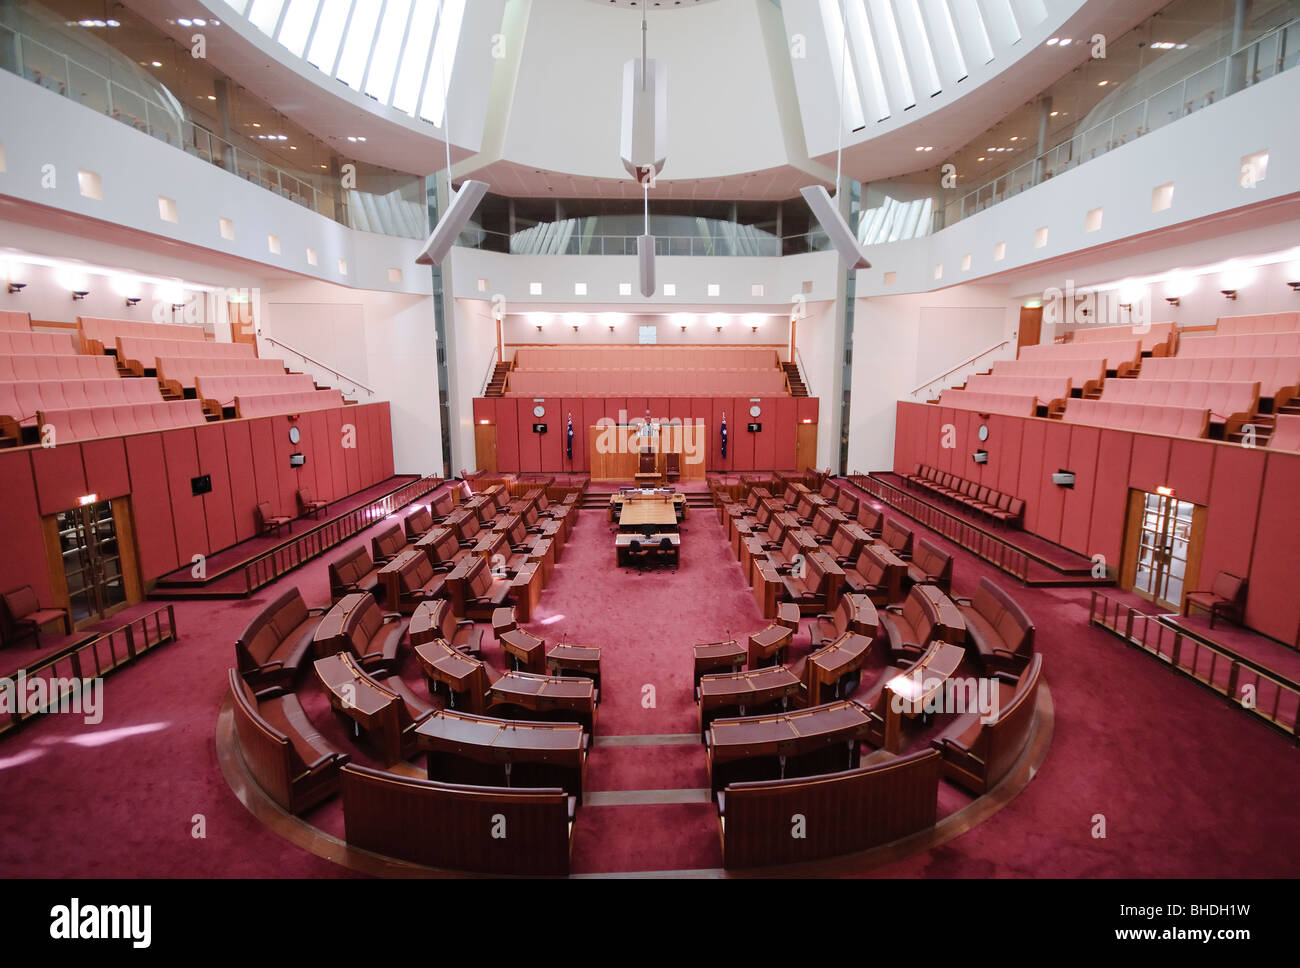 CANBERRA, Australien - Der Senat Gebäudes folgt das Farbschema des House of Lords, in Rot gehalten, dieses mal zu Schattierungen von Ocker stumm geschaltet, was auf die Erde und die Farben des Outback. Das Parlament ist der Treffpunkt des Parlaments von Australien. Es ist in Canberra, der Hauptstadt Australiens. Es wurde am 9. Mai 1988 von Königin Elisabeth II., Königin von Australien.[1] Seine für den Bau wurden über $ 1,1 Mrd. eröffnet. Zum Zeitpunkt der Konstruktion Es war das teuerste Gebäude in der südlichen Hemisphäre. Vor 1988, das Parlament von Australien met in der Vorläufigen Stockfoto